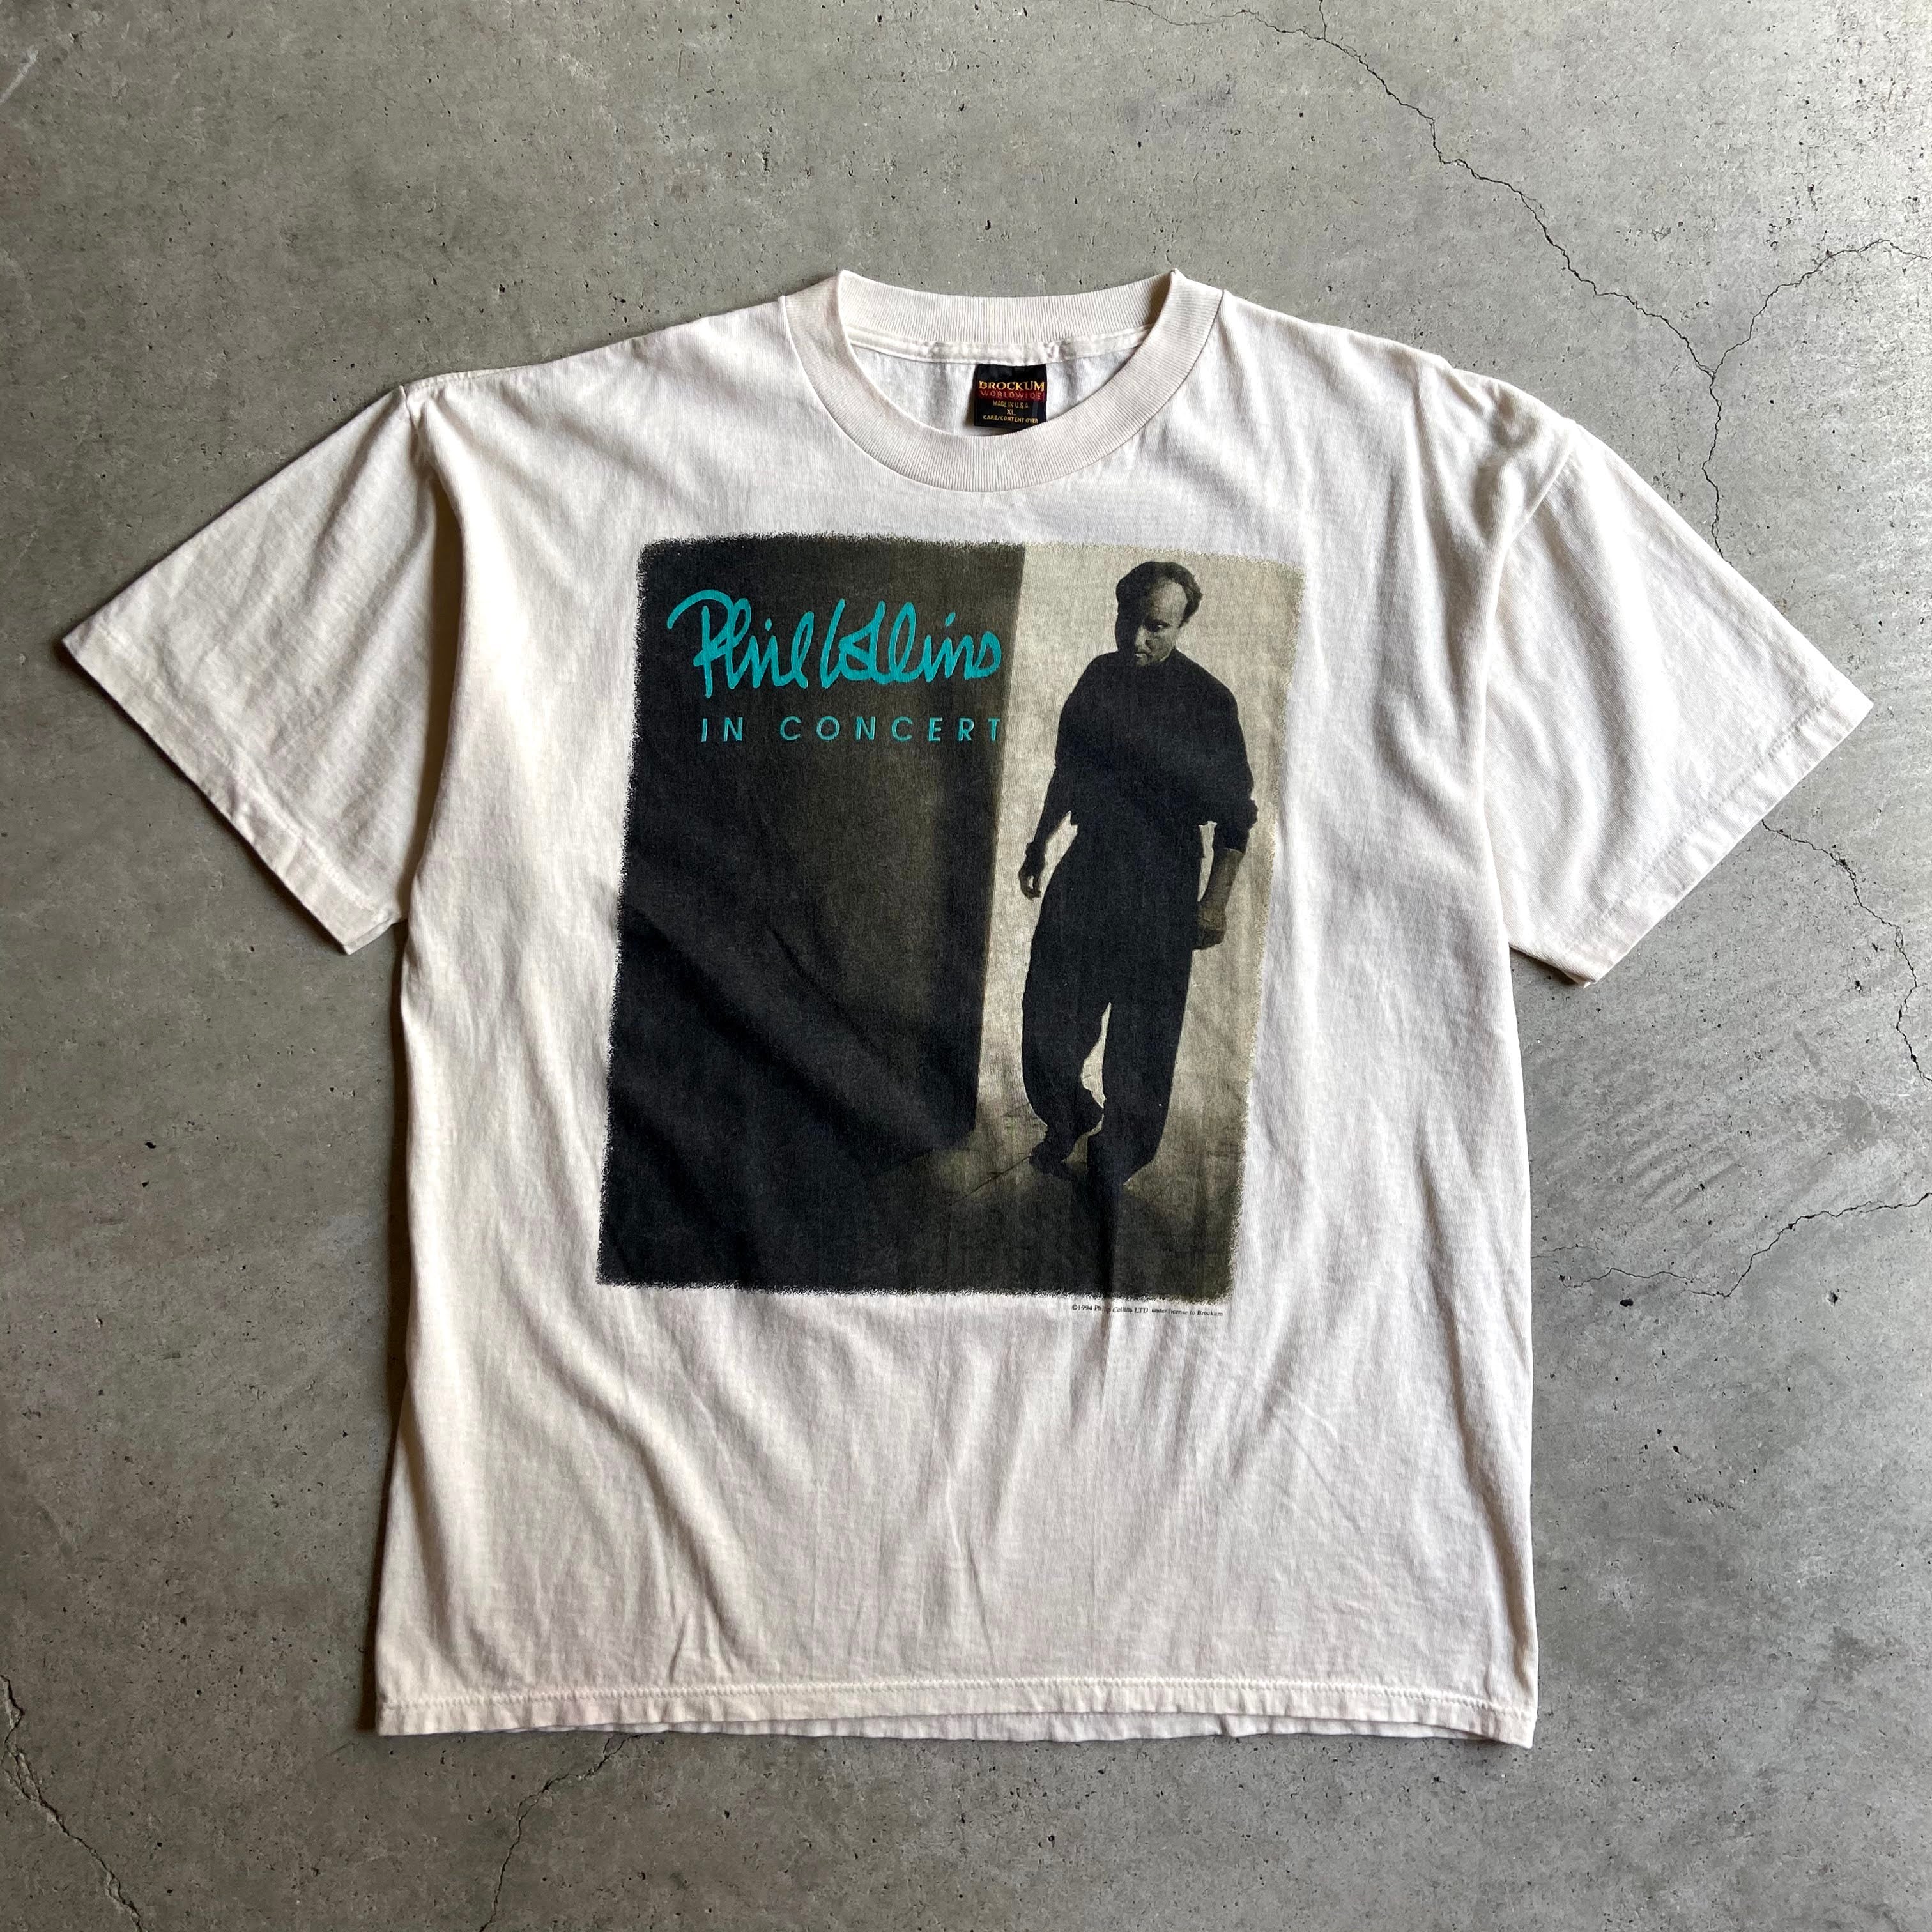 90年代 Phil Collins フィル・コリンズ IN COCERT 1994 アーティストTシャツ メンズXL 古着 バンドTシャツ 90s  ビンテージ ヴィンテージ シングルステッチ オフホワイト 生成り【Tシャツ】【SA2107】【SA2204】 | cave 古着屋【公式】古着通販サイト